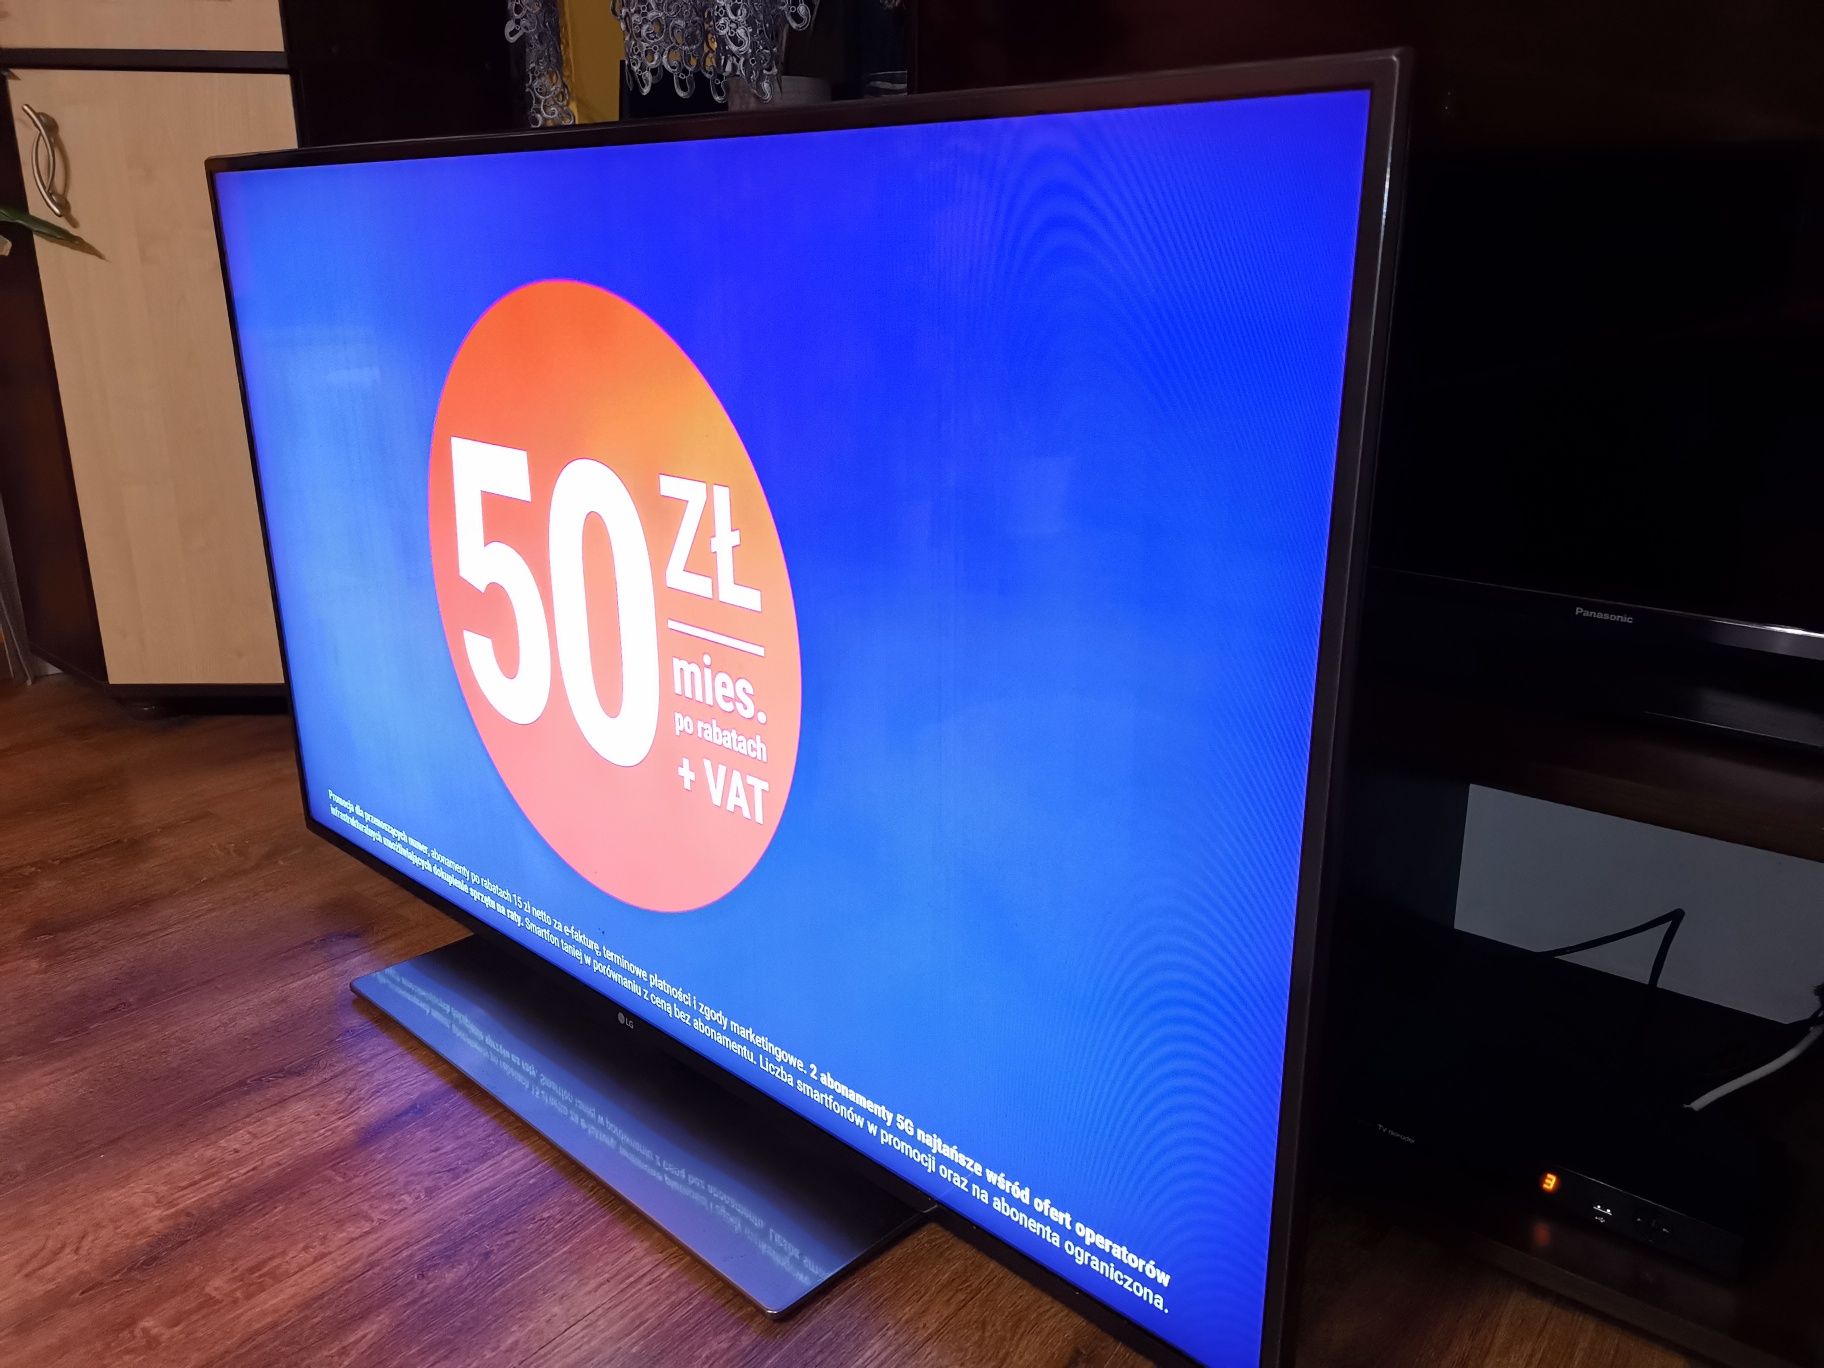 Telewizor Lg 55 cali smart tv